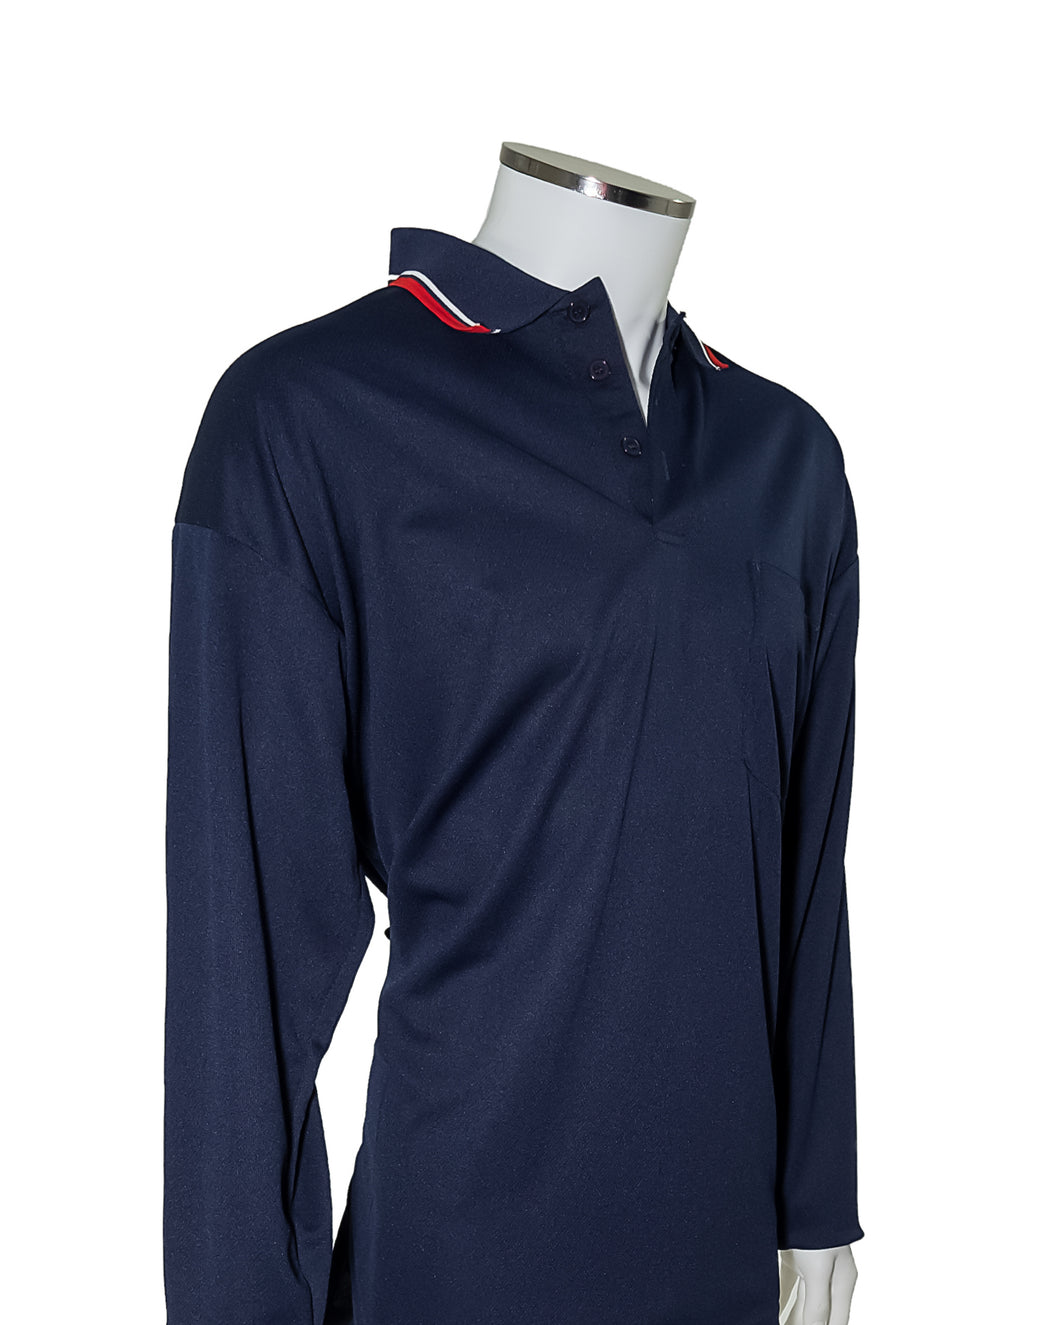 Major League Umpire Shirt - Long Sleeve Navy - Officials Depot